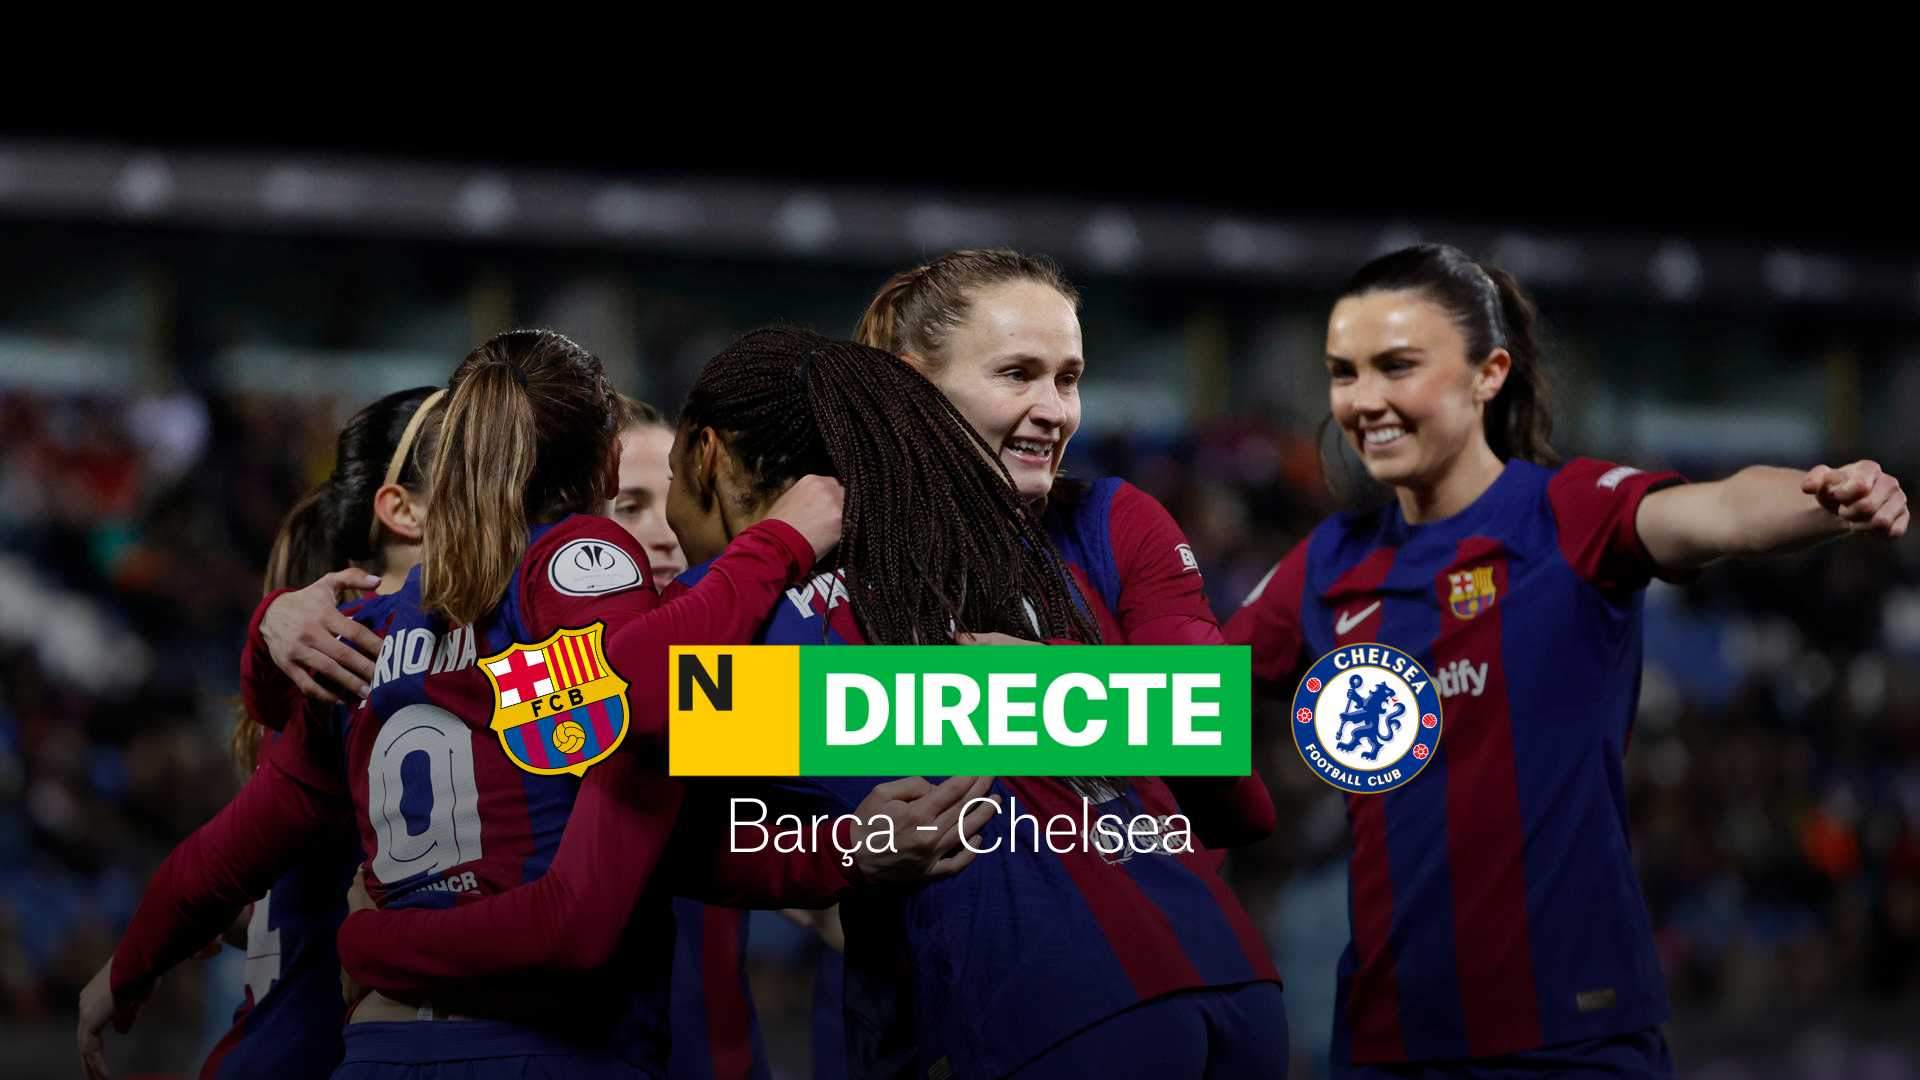 Barça - Chelsea de la Champions League femenina, DIRECTE | Resultat, resum i gols